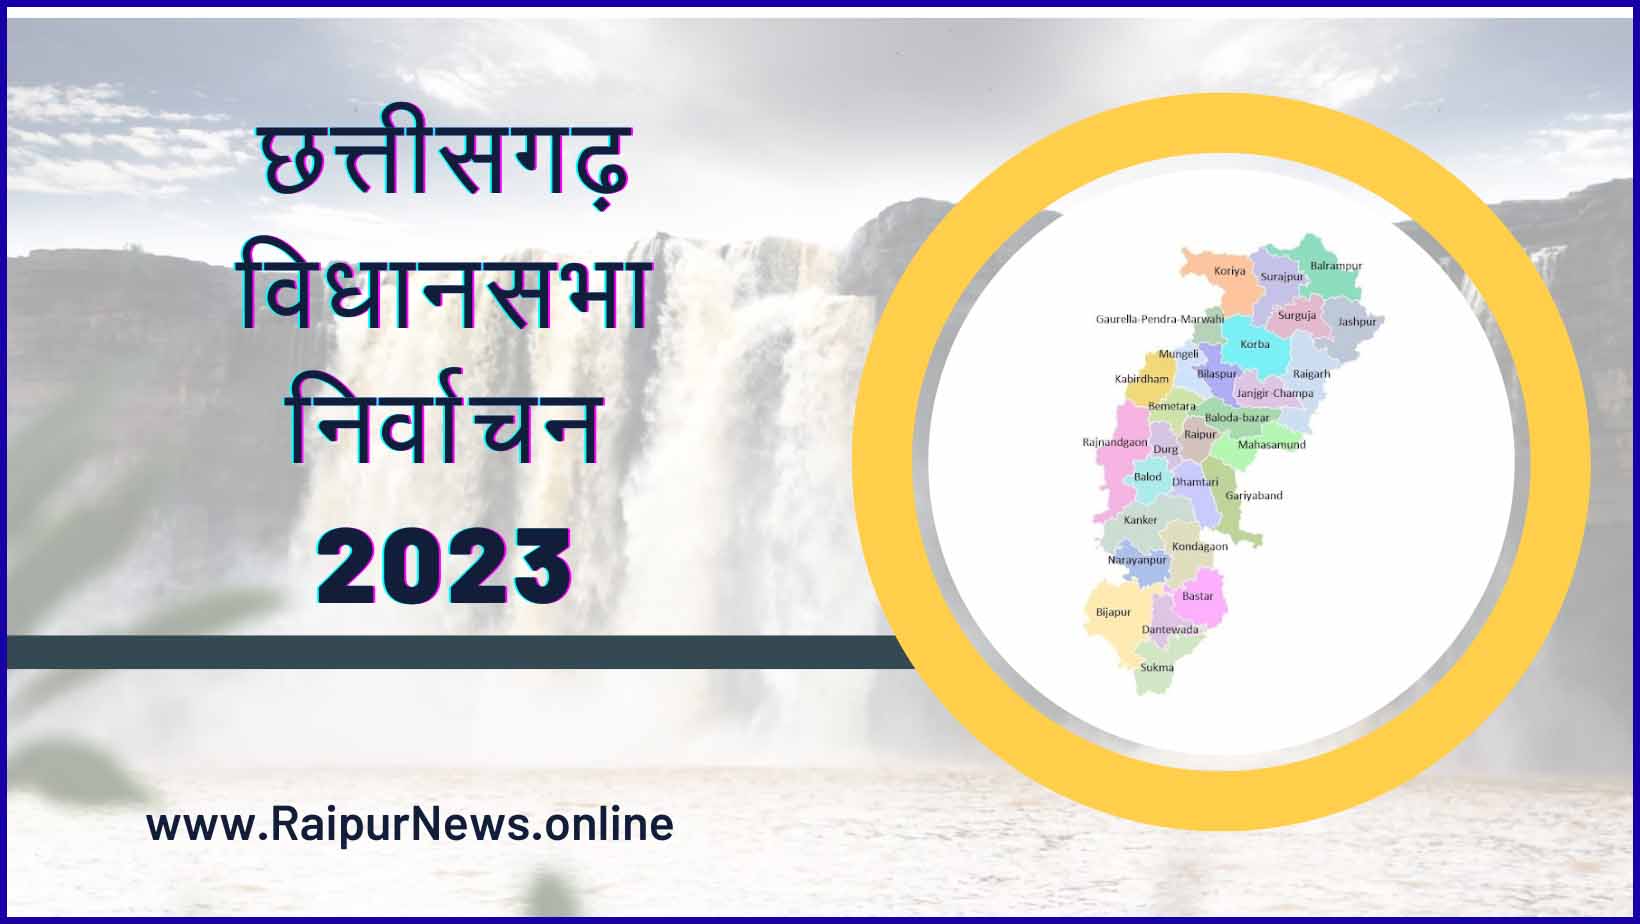 छत्तीसगढ़ विधानसभा निर्वाचन-2023 : प्रथम चरण की बीस विधानसभा क्षेत्रों के लिए कुल 223 अभ्यर्थी होंगे चुनाव मैदान में